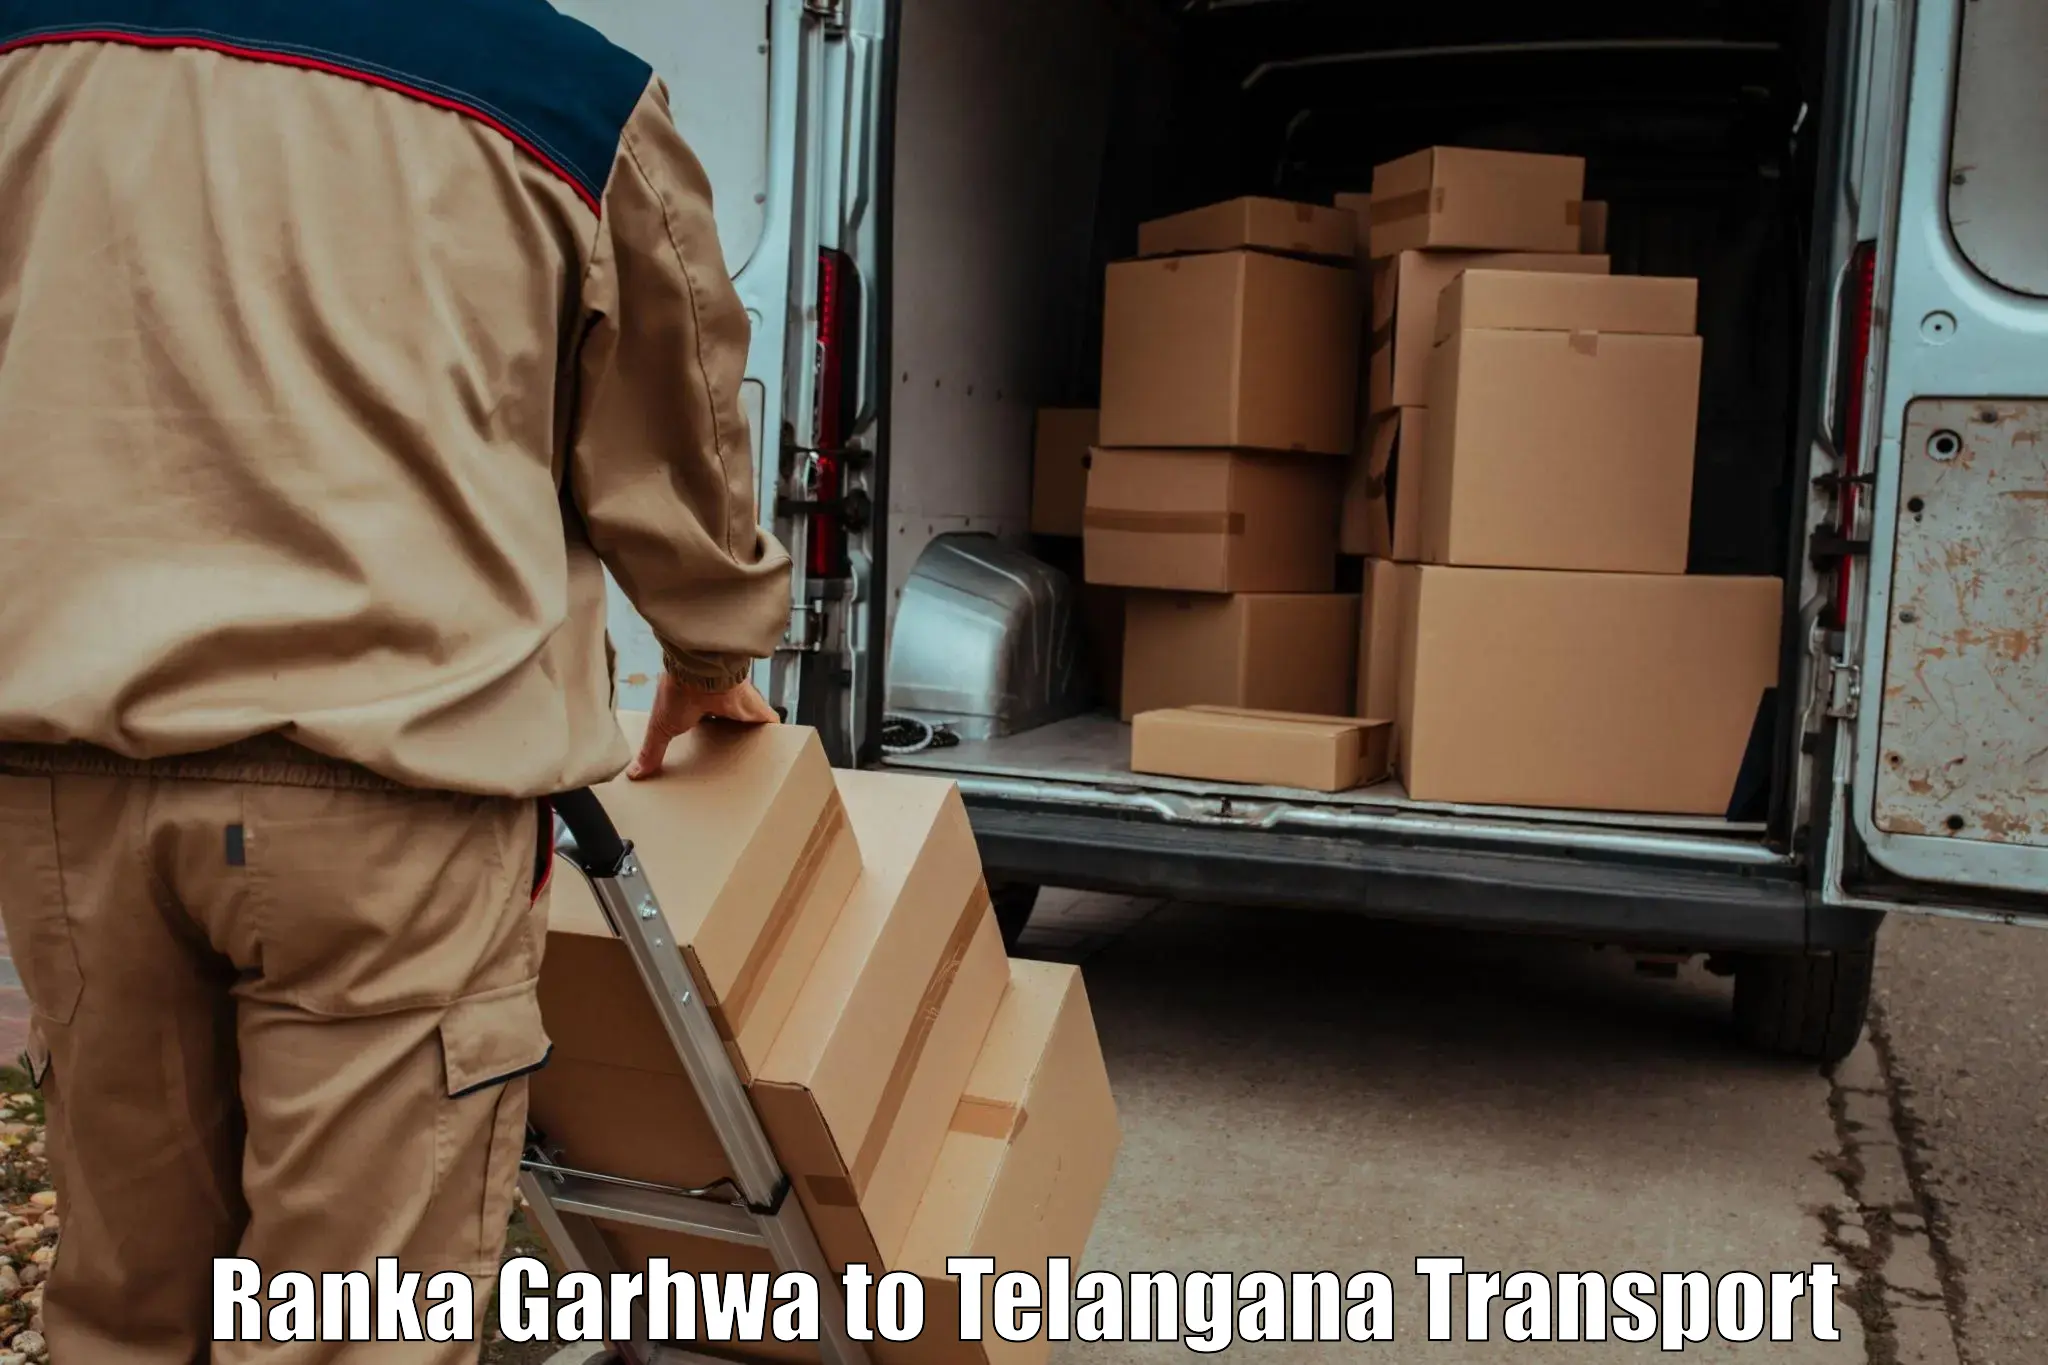 Interstate transport services Ranka Garhwa to Karimnagar